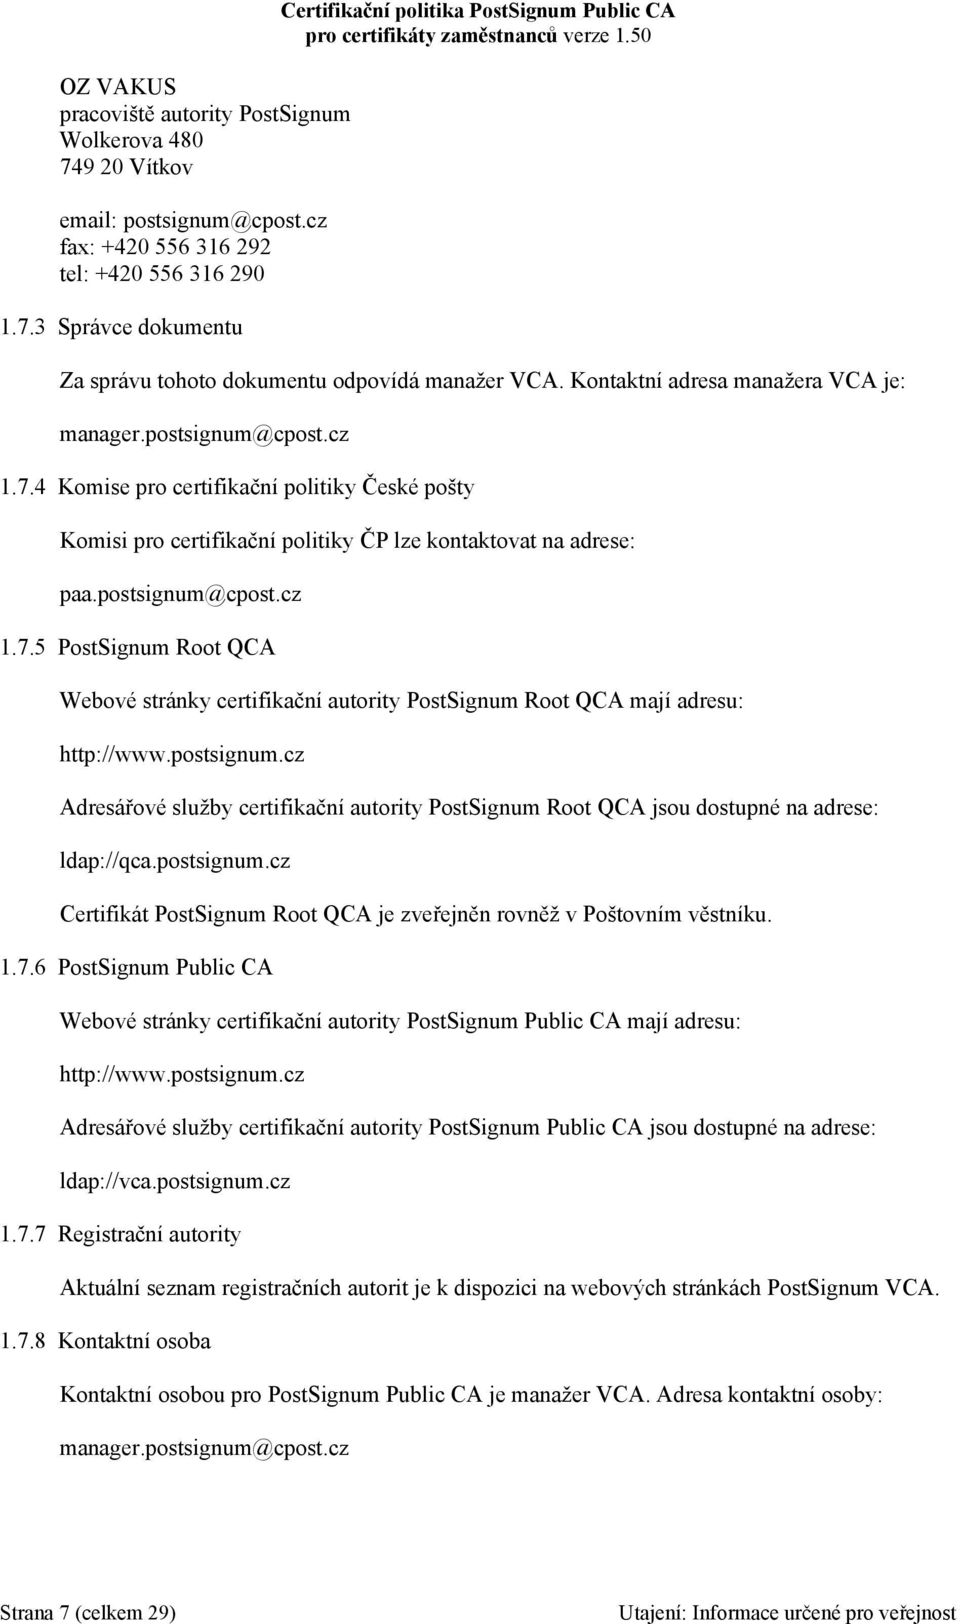 postsignum.cz Adresářové služby certifikační autority PostSignum Root QCA jsou dostupné na adrese: ldap://qca.postsignum.cz Certifikát PostSignum Root QCA je zveřejněn rovněž v Poštovním věstníku. 1.